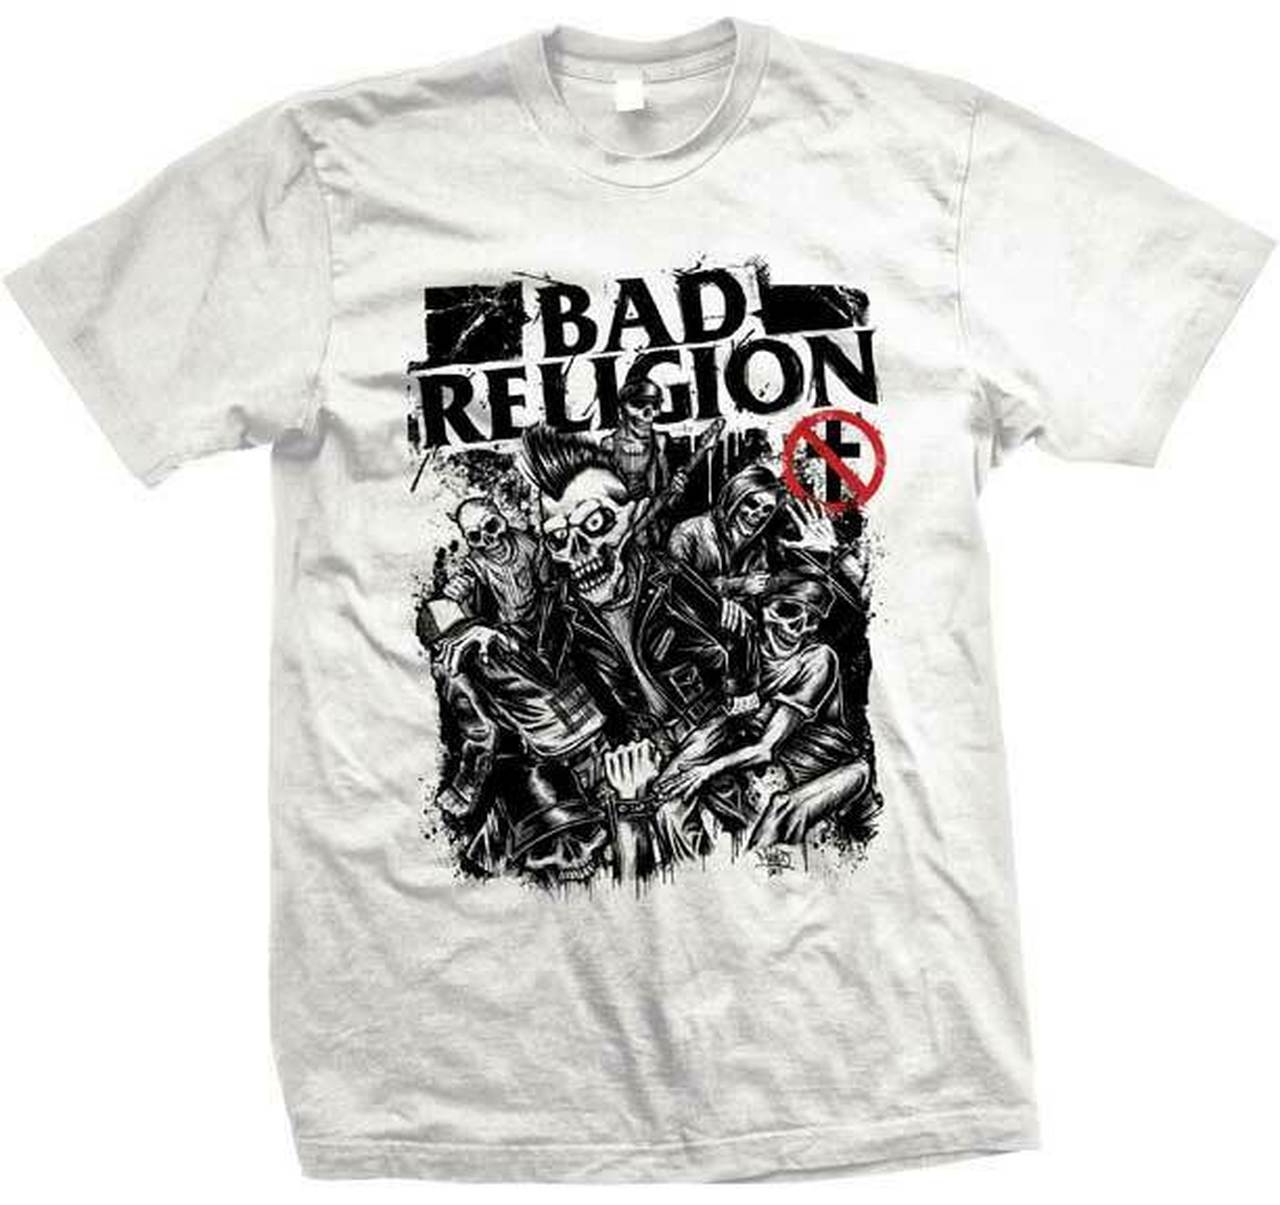 バンドTシャツ 通販 バッド レリジョン,Tシャツ,Bad Religion,メロコア,punk,パンク,,hardcore,ロックTシャツ,通販